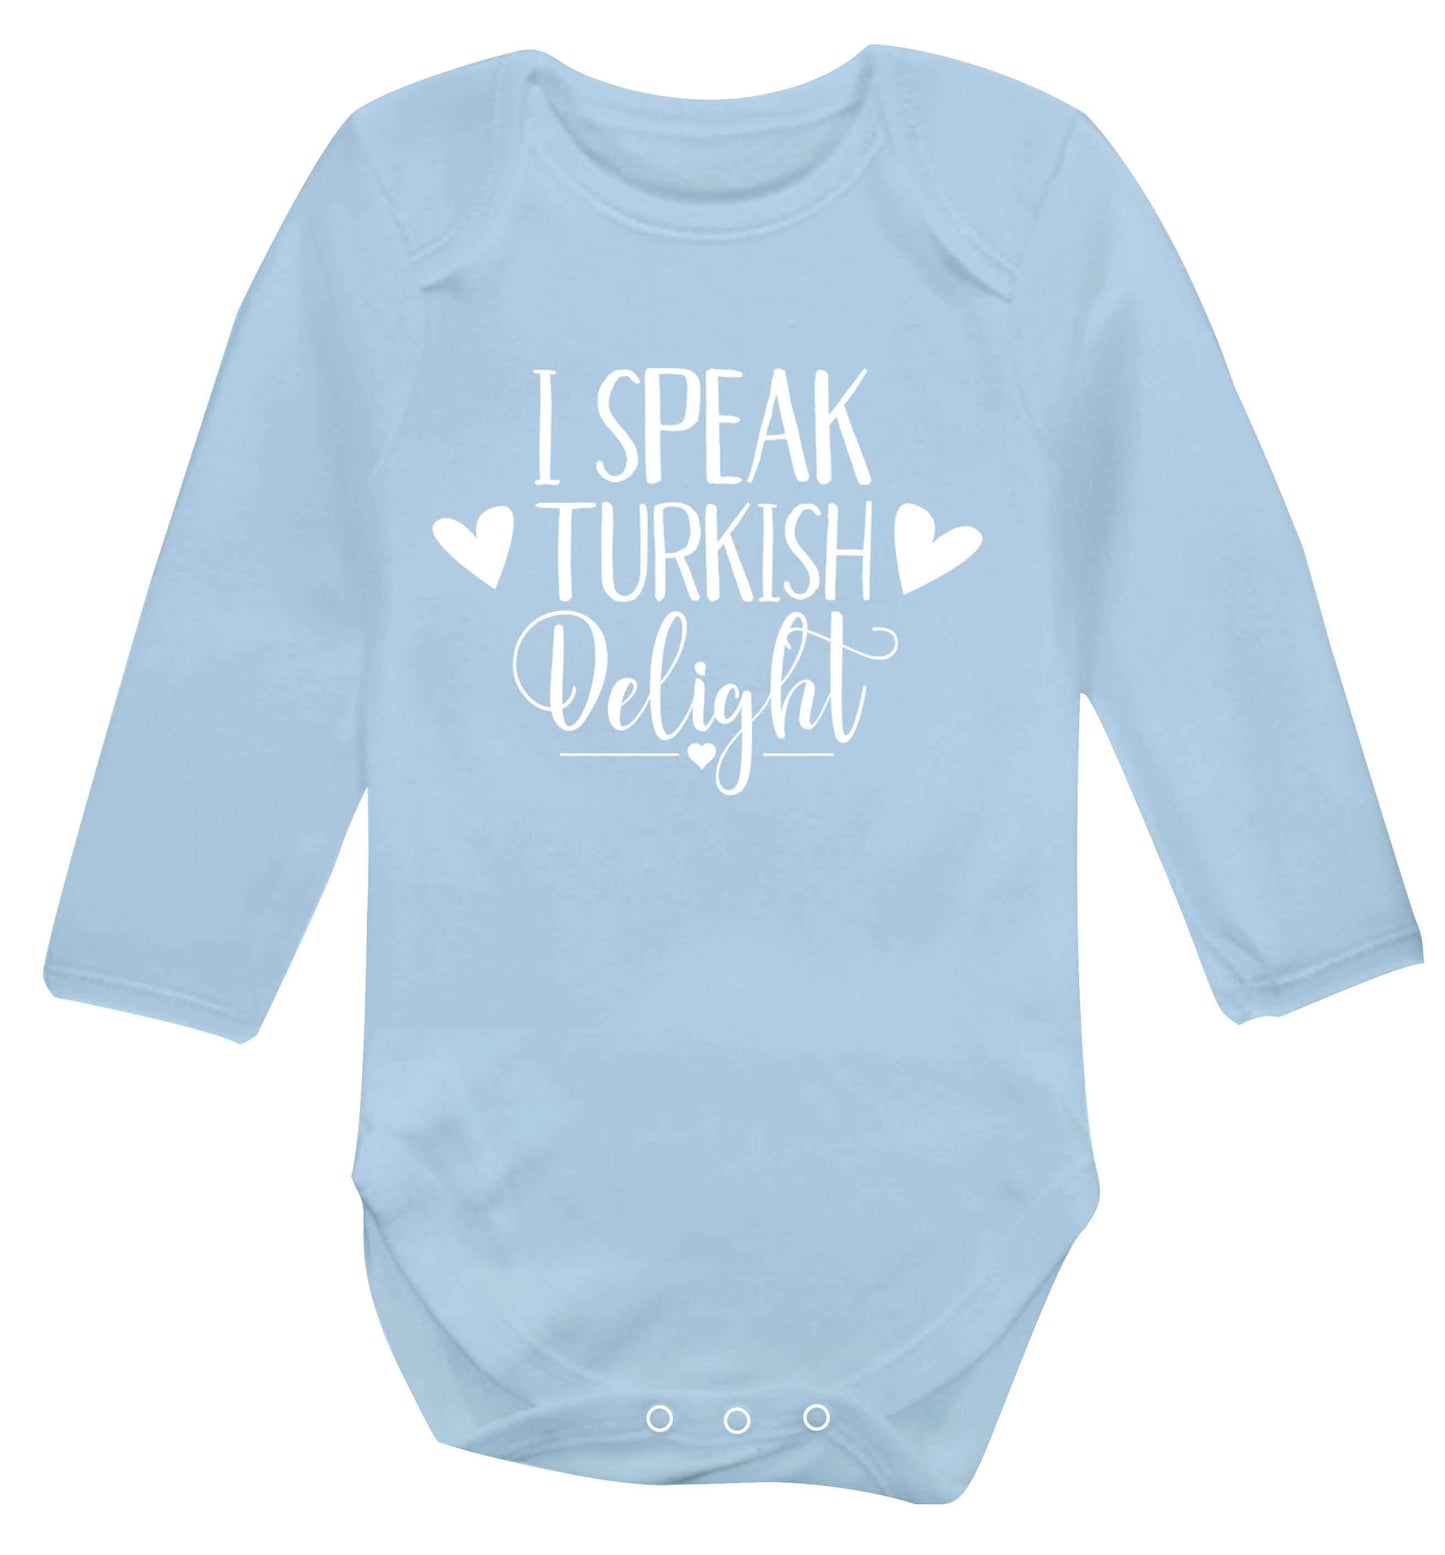 I speak turkish...delight Baby Vest long sleeved pale blue 6-12 months